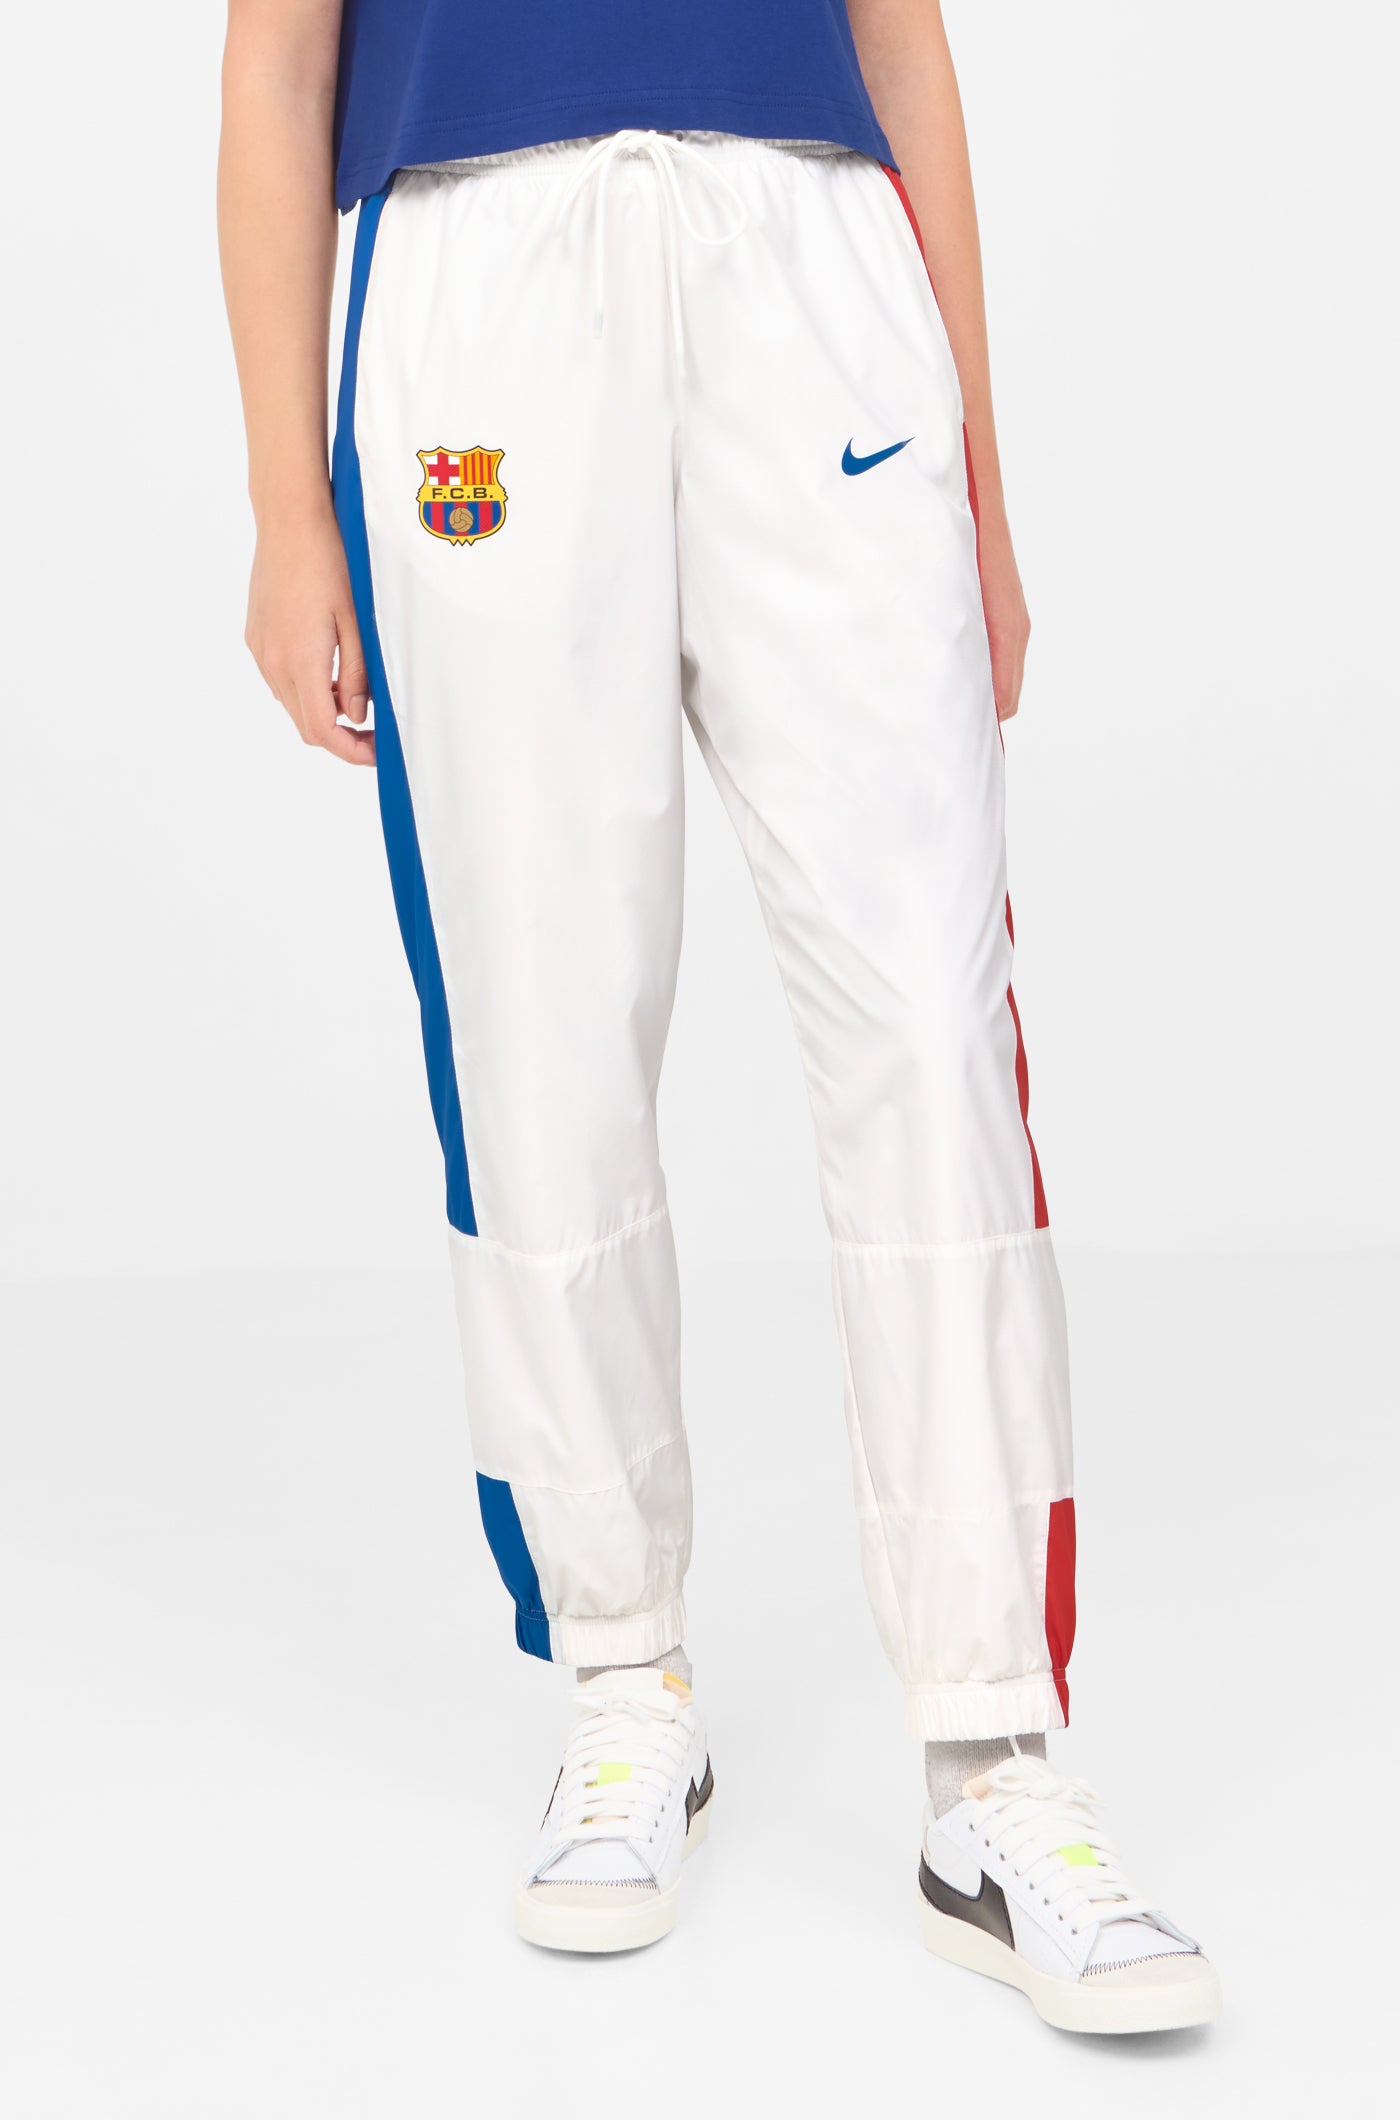 Pants white Barça Nike - Women